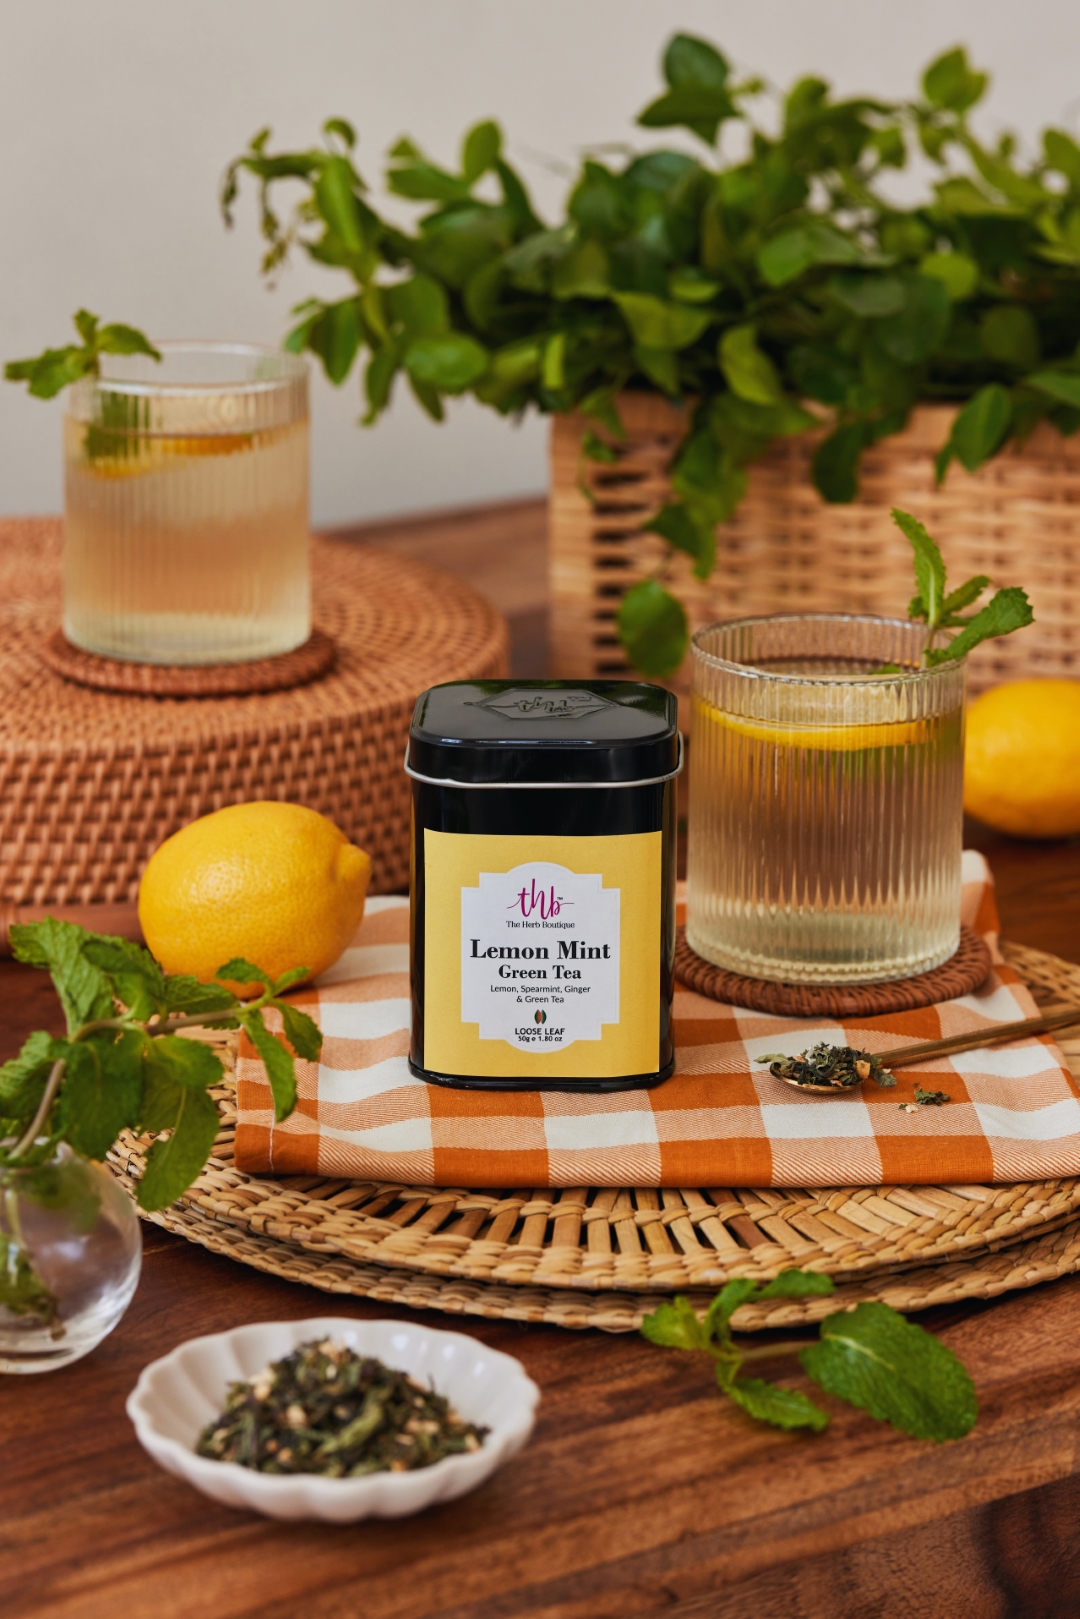 Product: The Herb Boutique Lemon Mint Green Tea